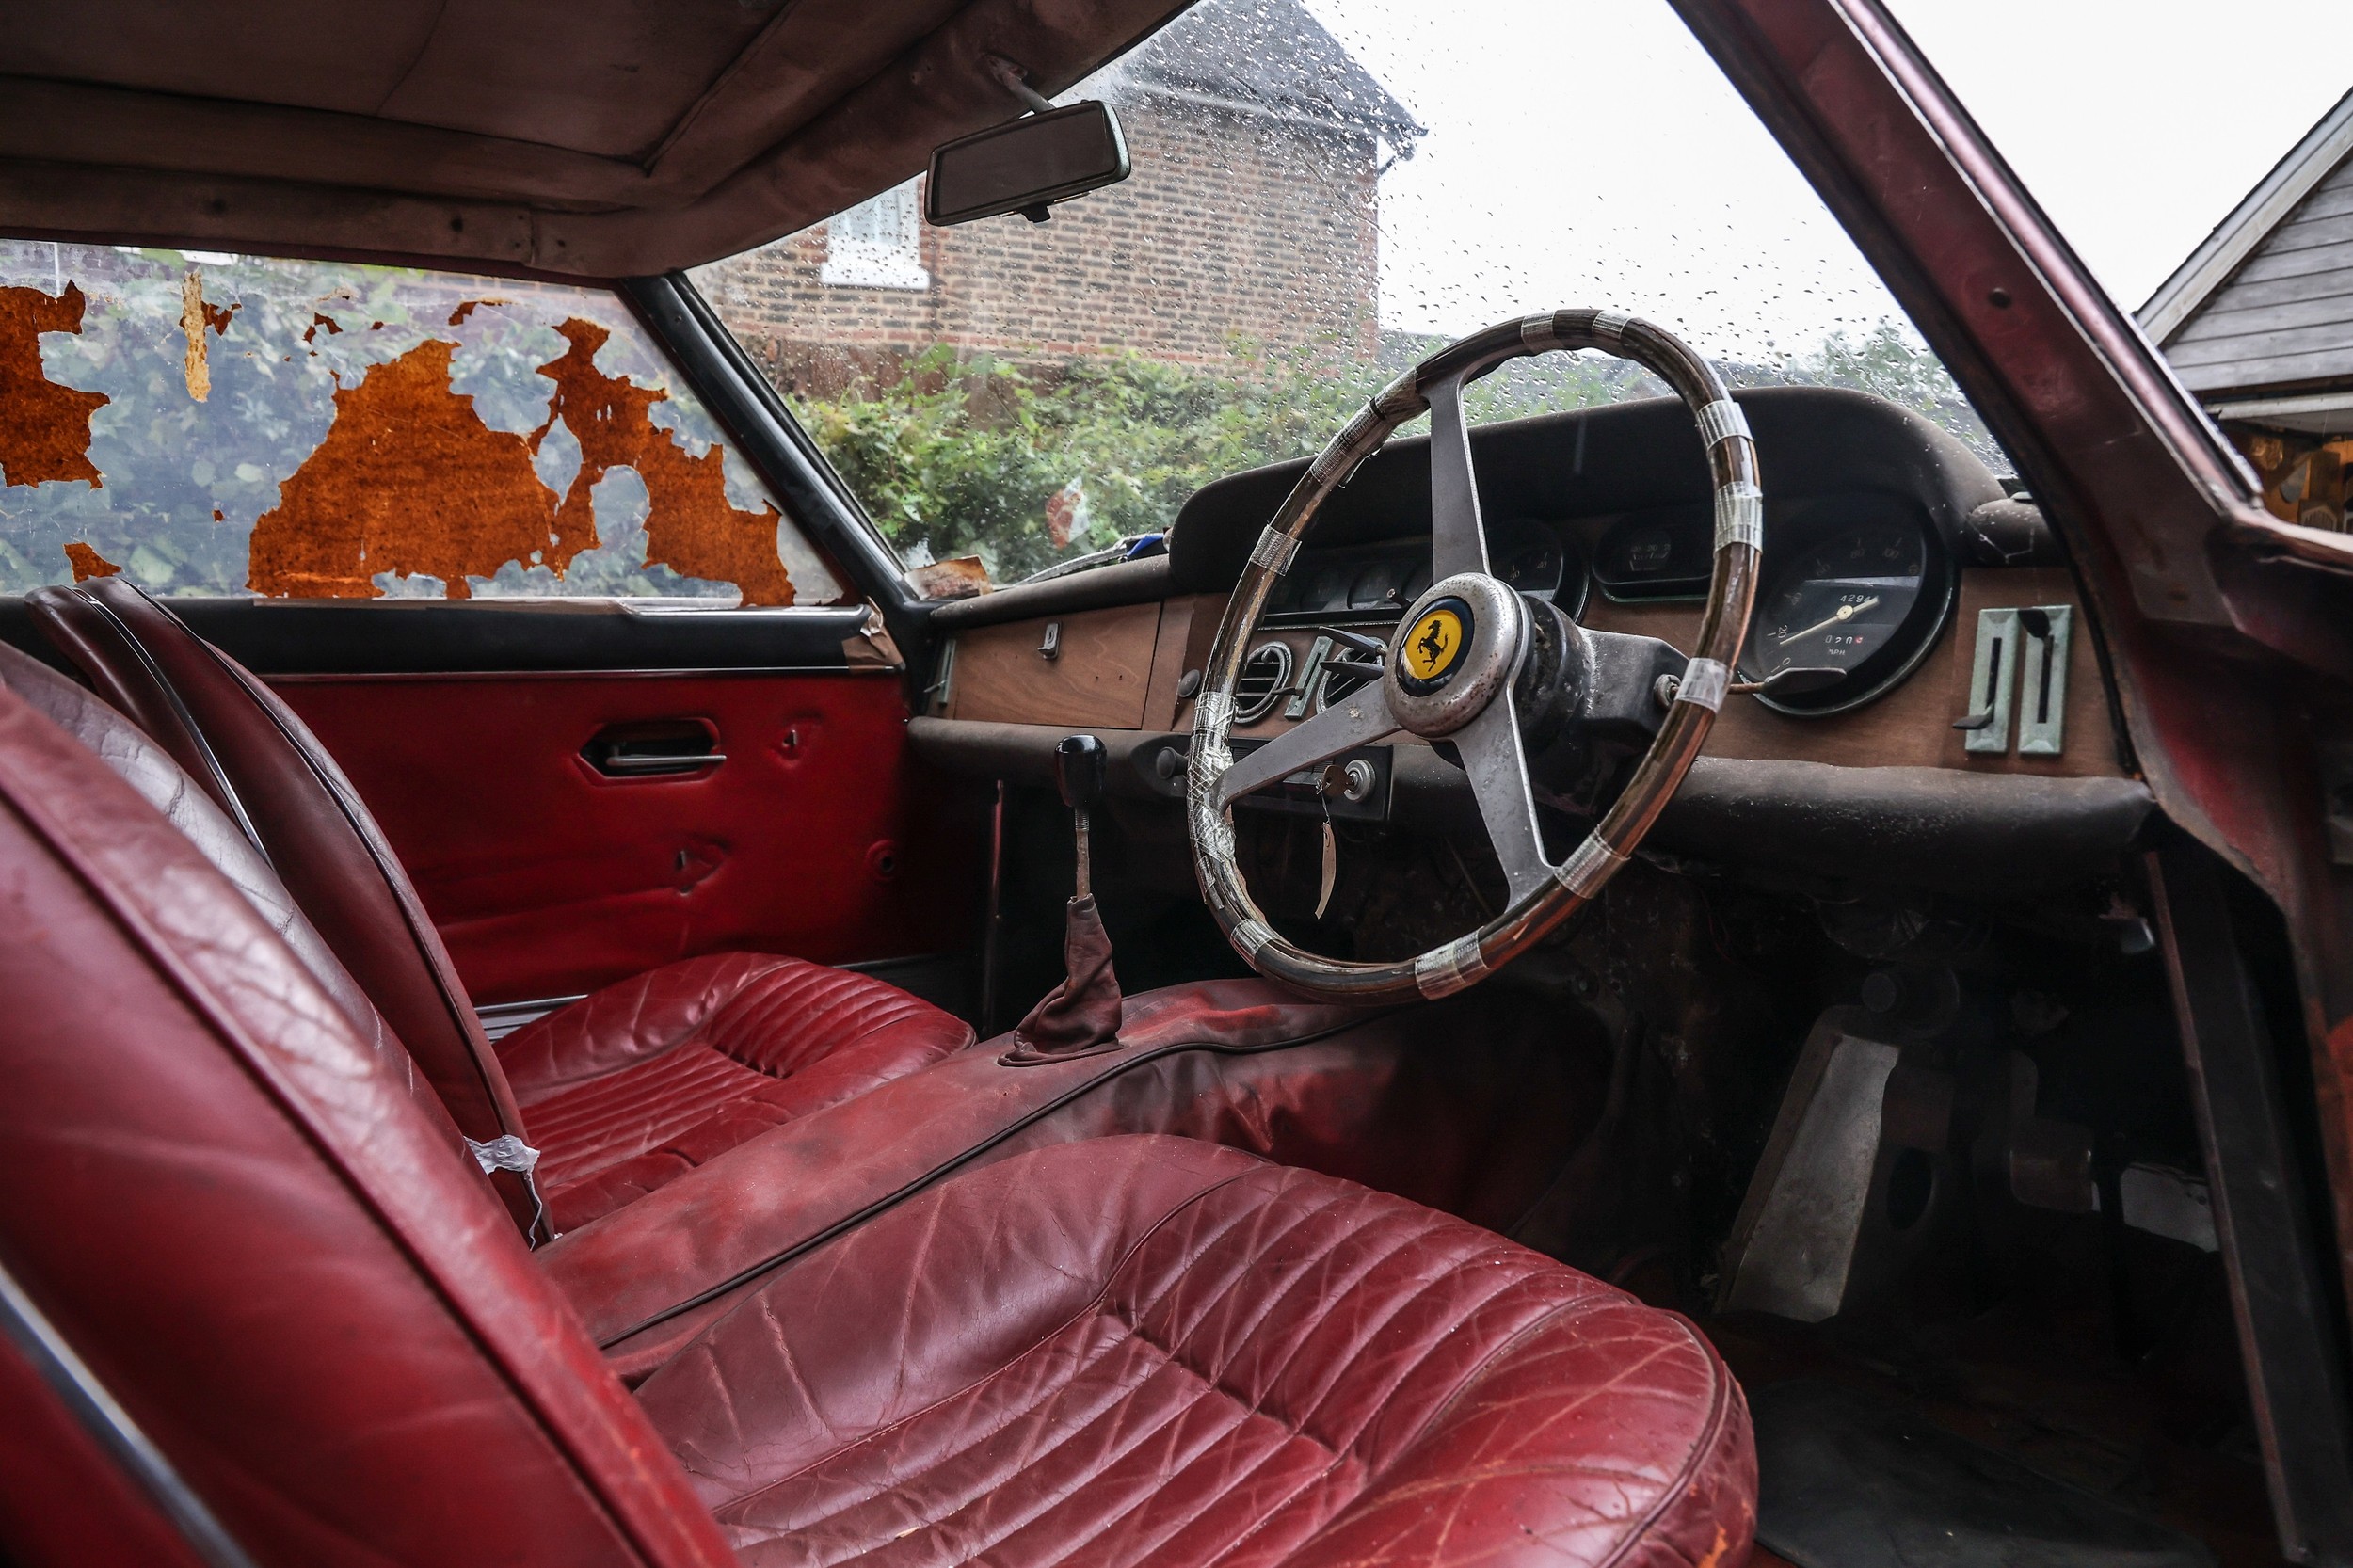 Ferrari 330 GT 2+2 interior